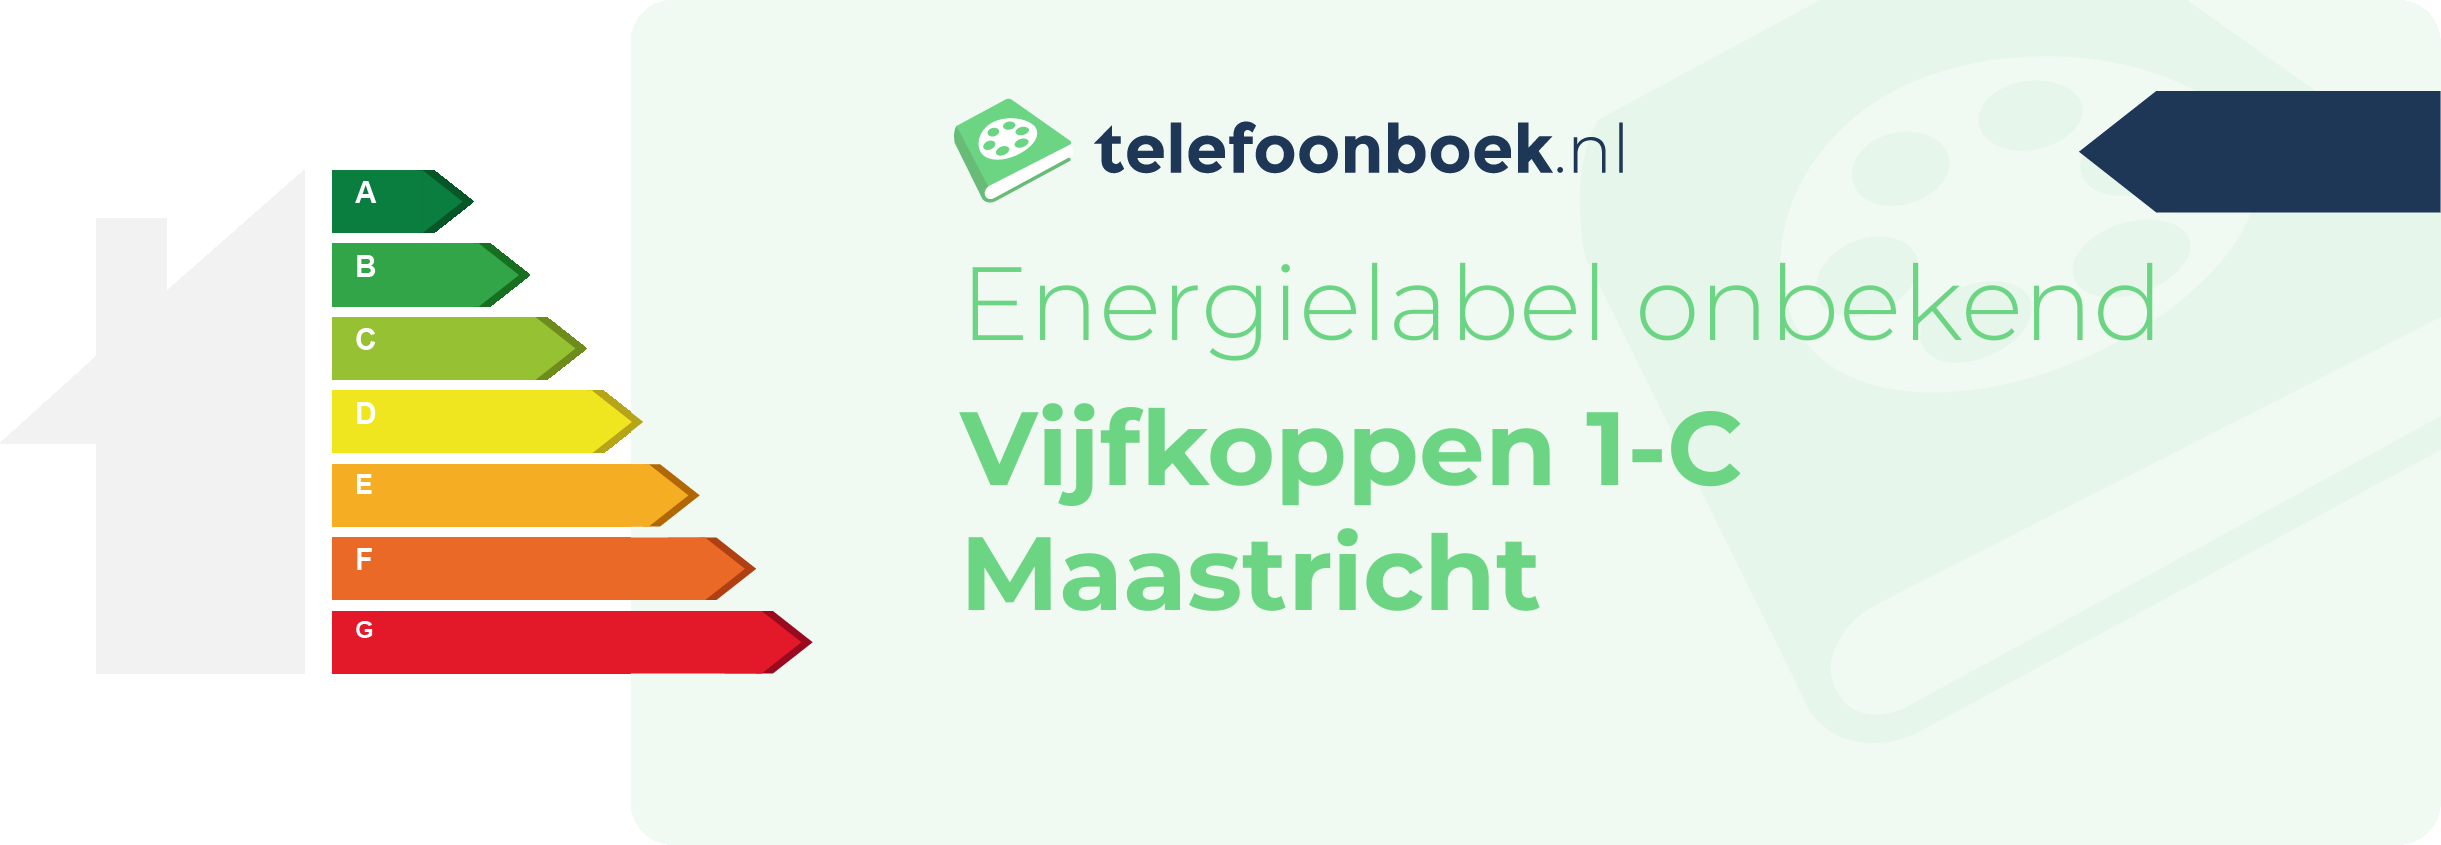 Energielabel Vijfkoppen 1-C Maastricht